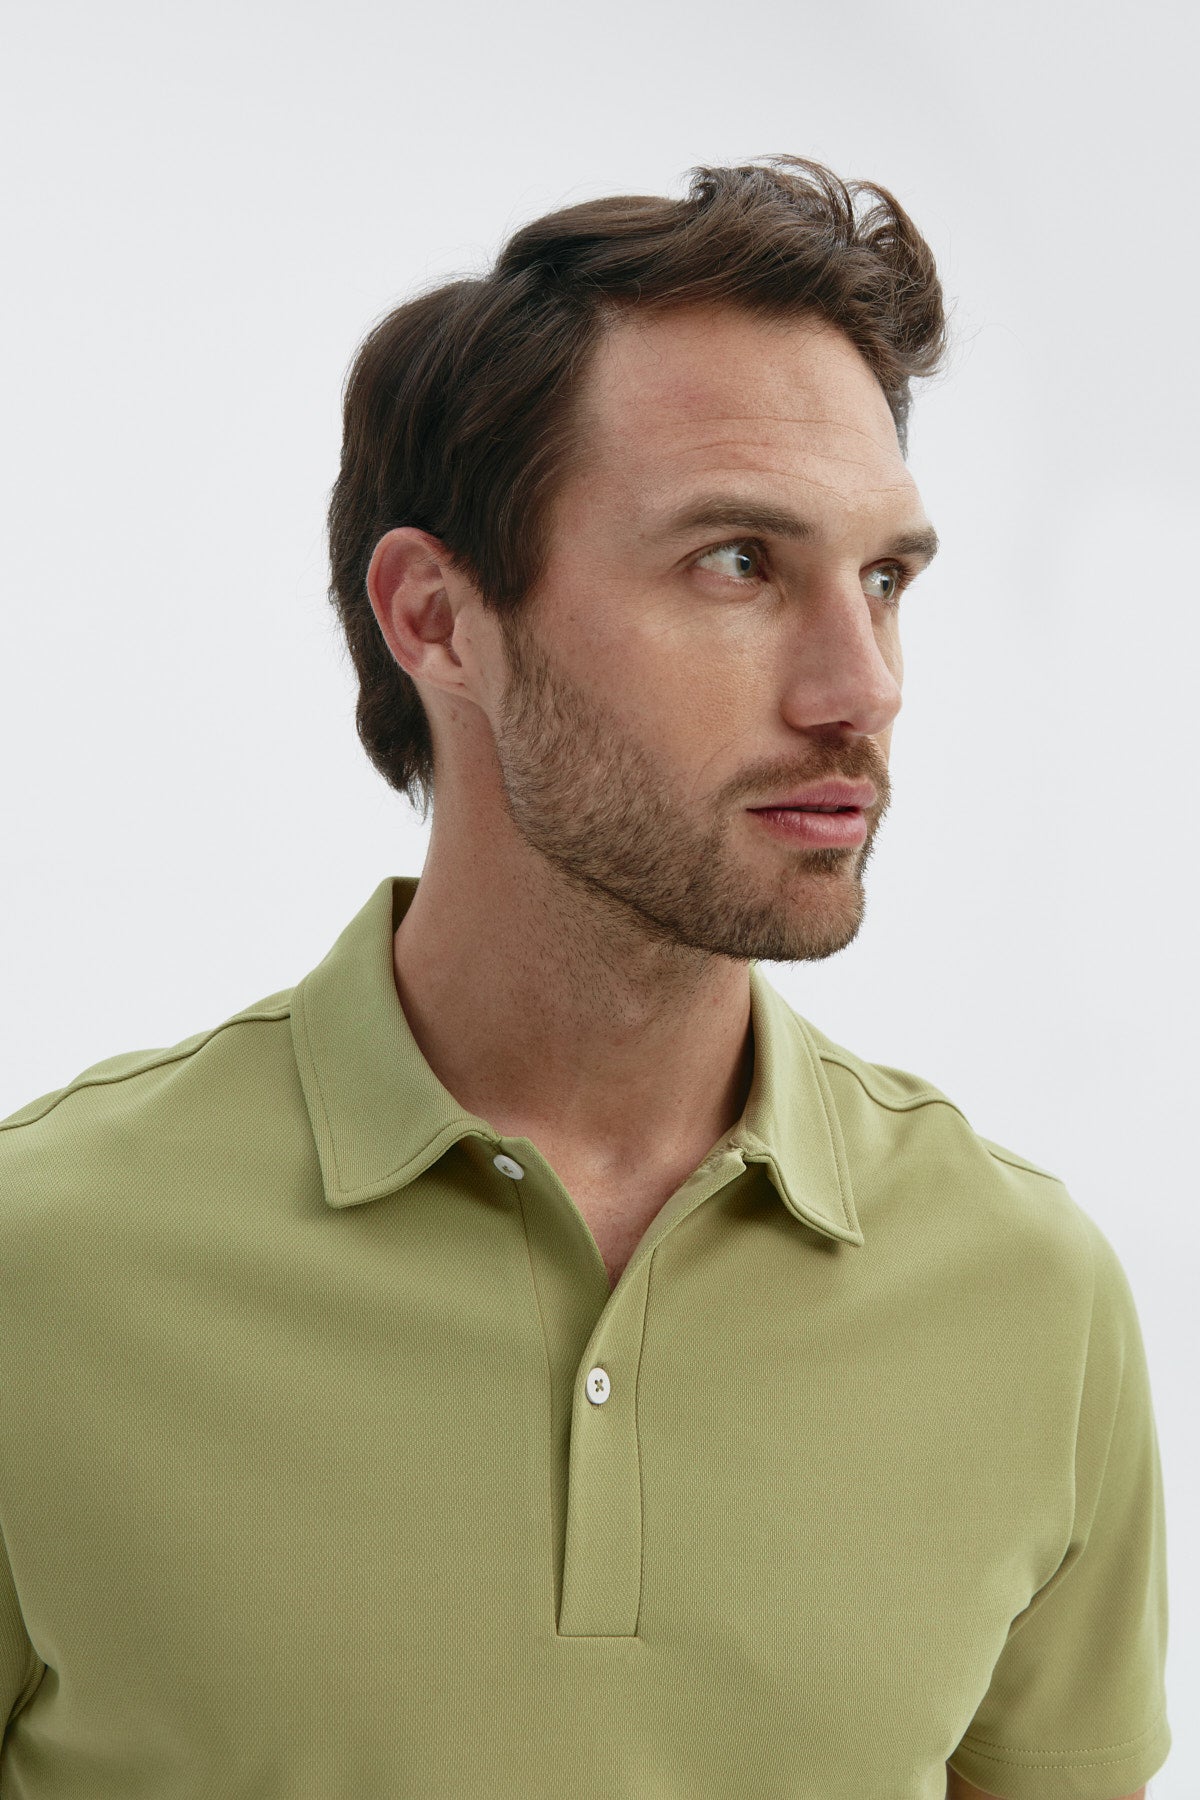 Polo manga corta para hombre en verde manzana de Sepiia, estilo y comodidad para cualquier ocasión. Foto retrato